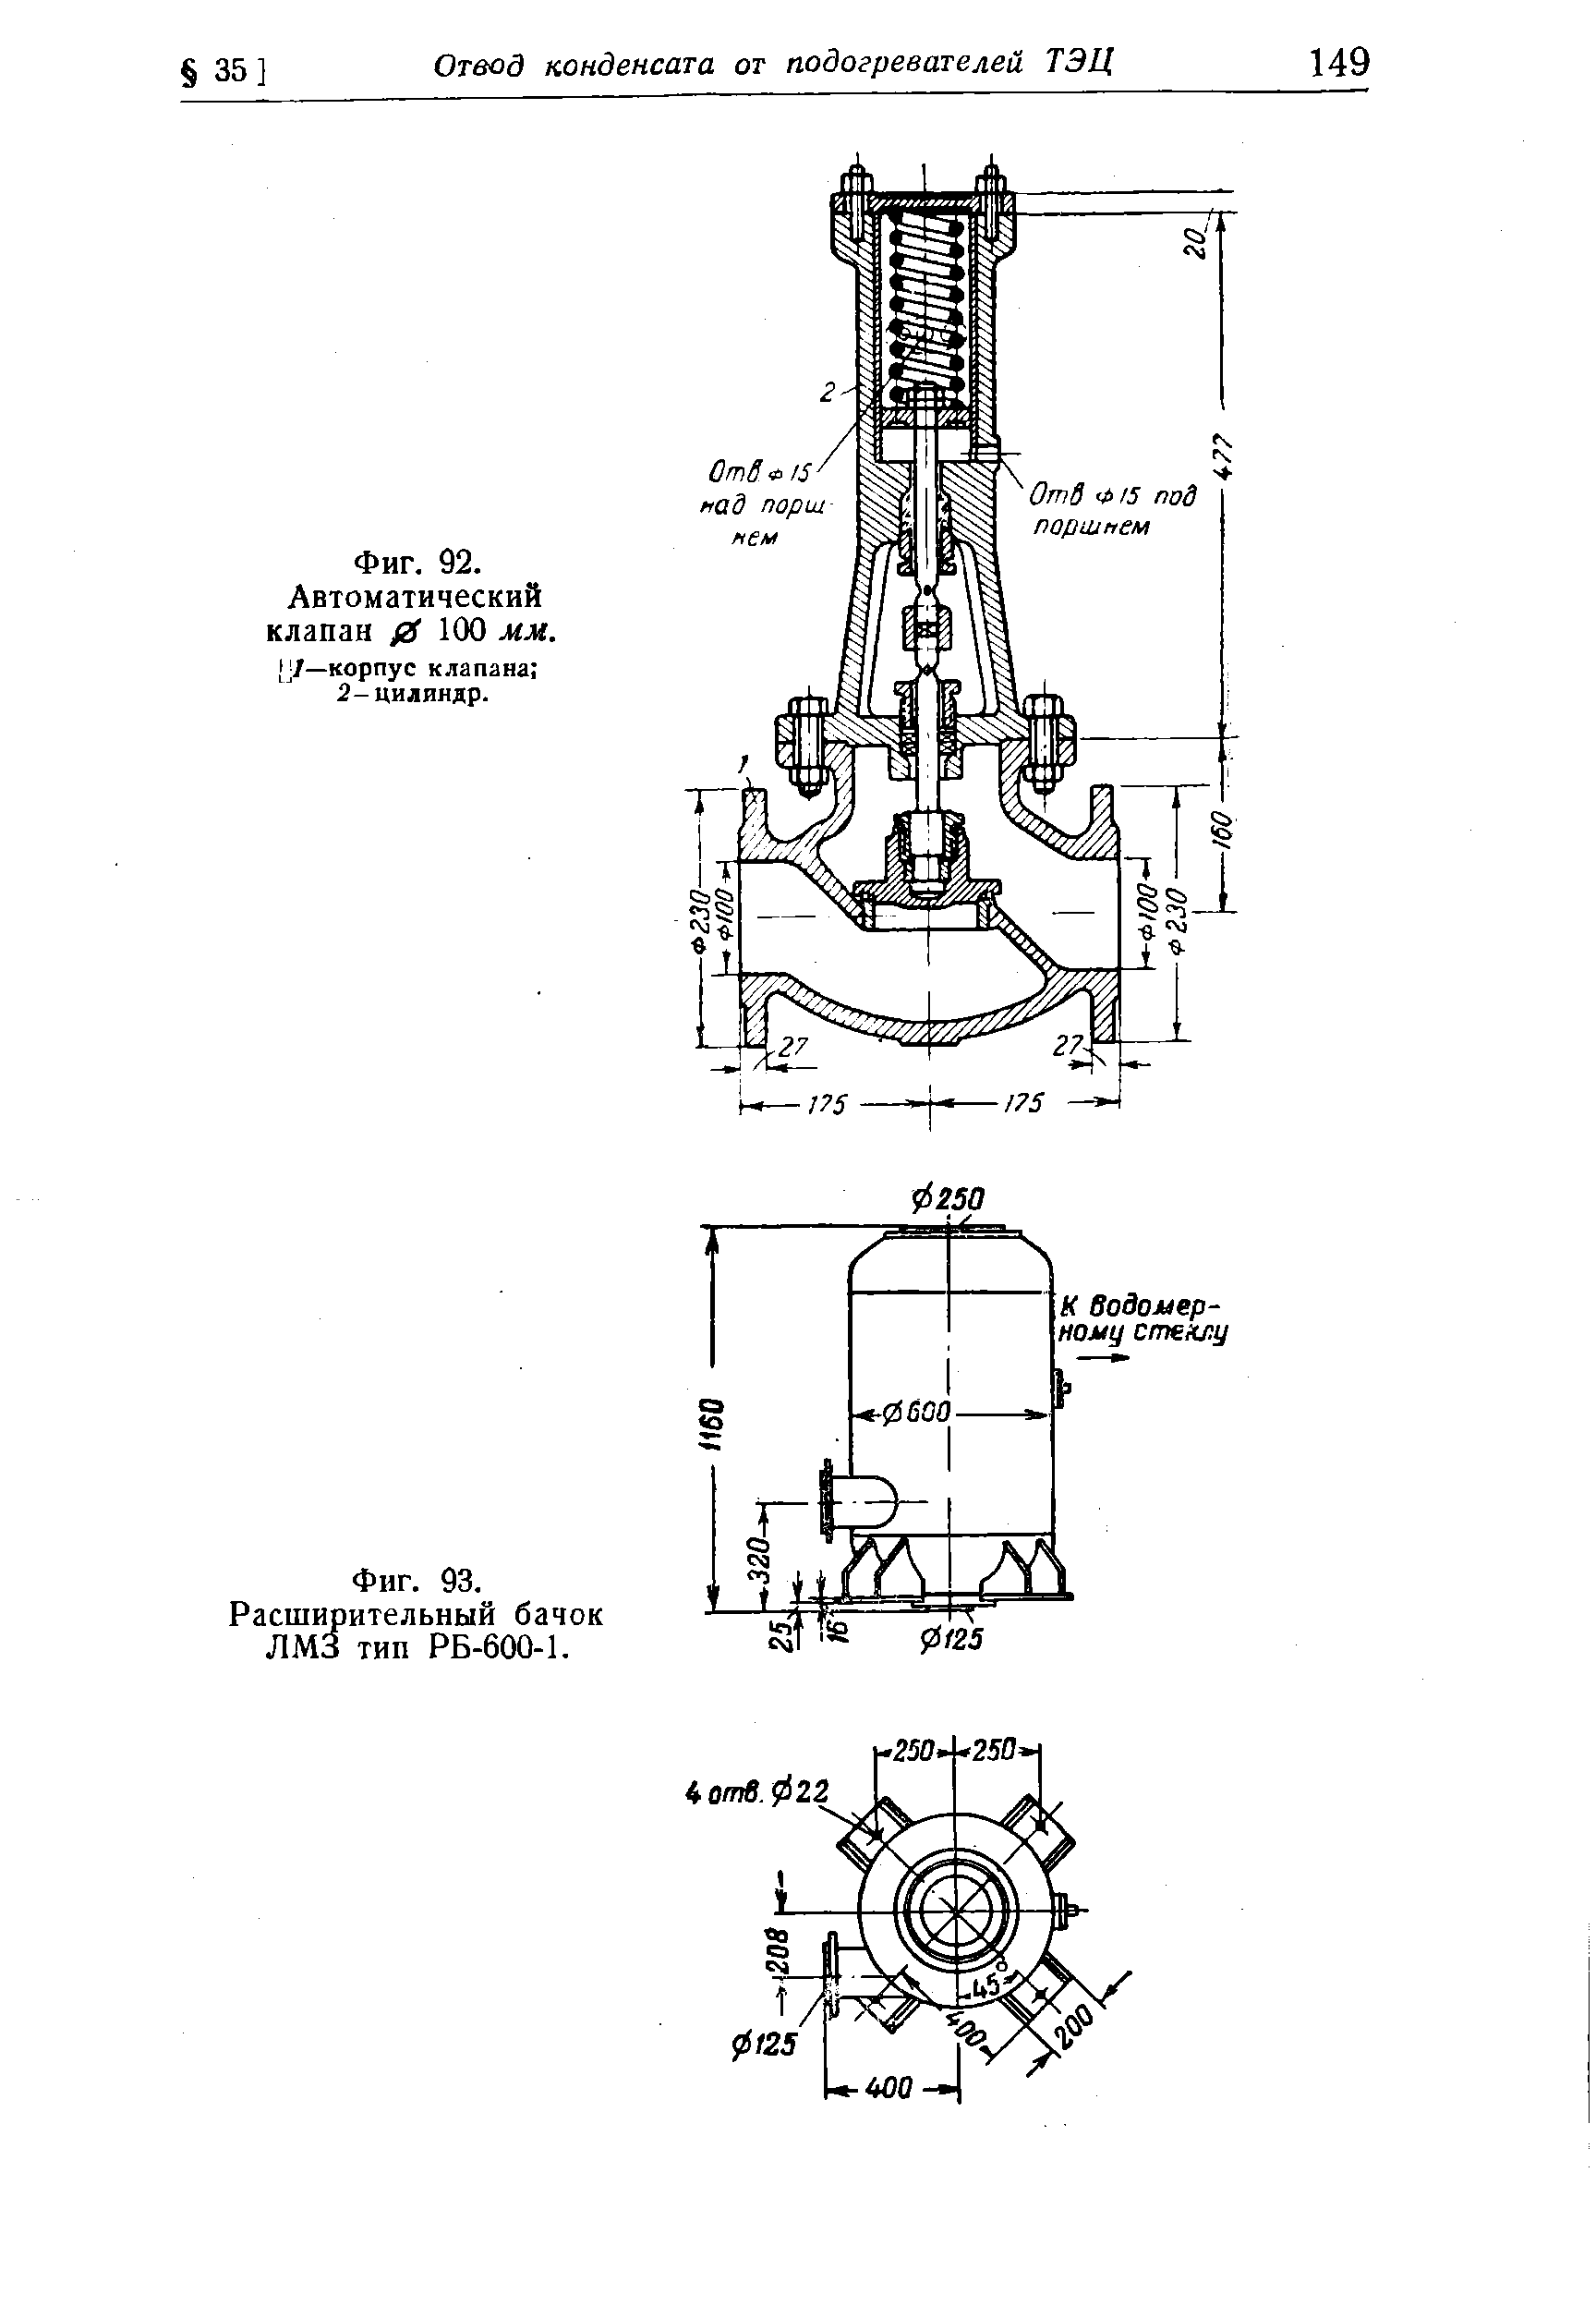 Фиг. 92. Автоматический клапан fiS 100 мм. (у—корпус клапана 2-цилиндр.
